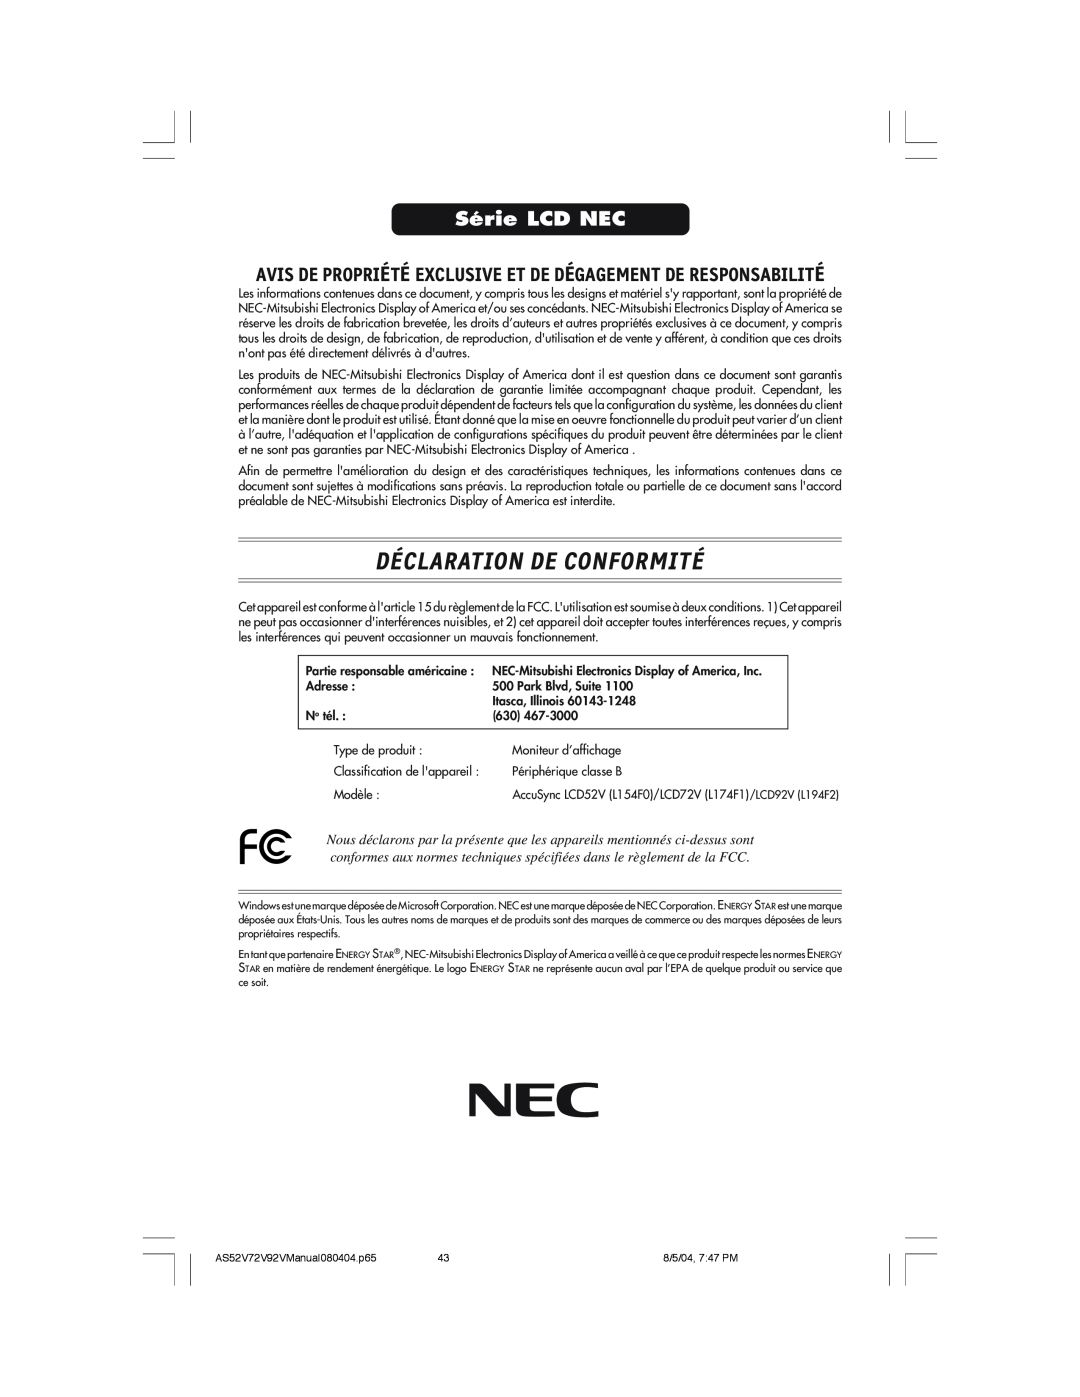 NEC LCD52V manual Déclaration De Conformité, Série LCD NEC, Avis De Propriété Exclusive Et De Dégagement De Responsabilité 